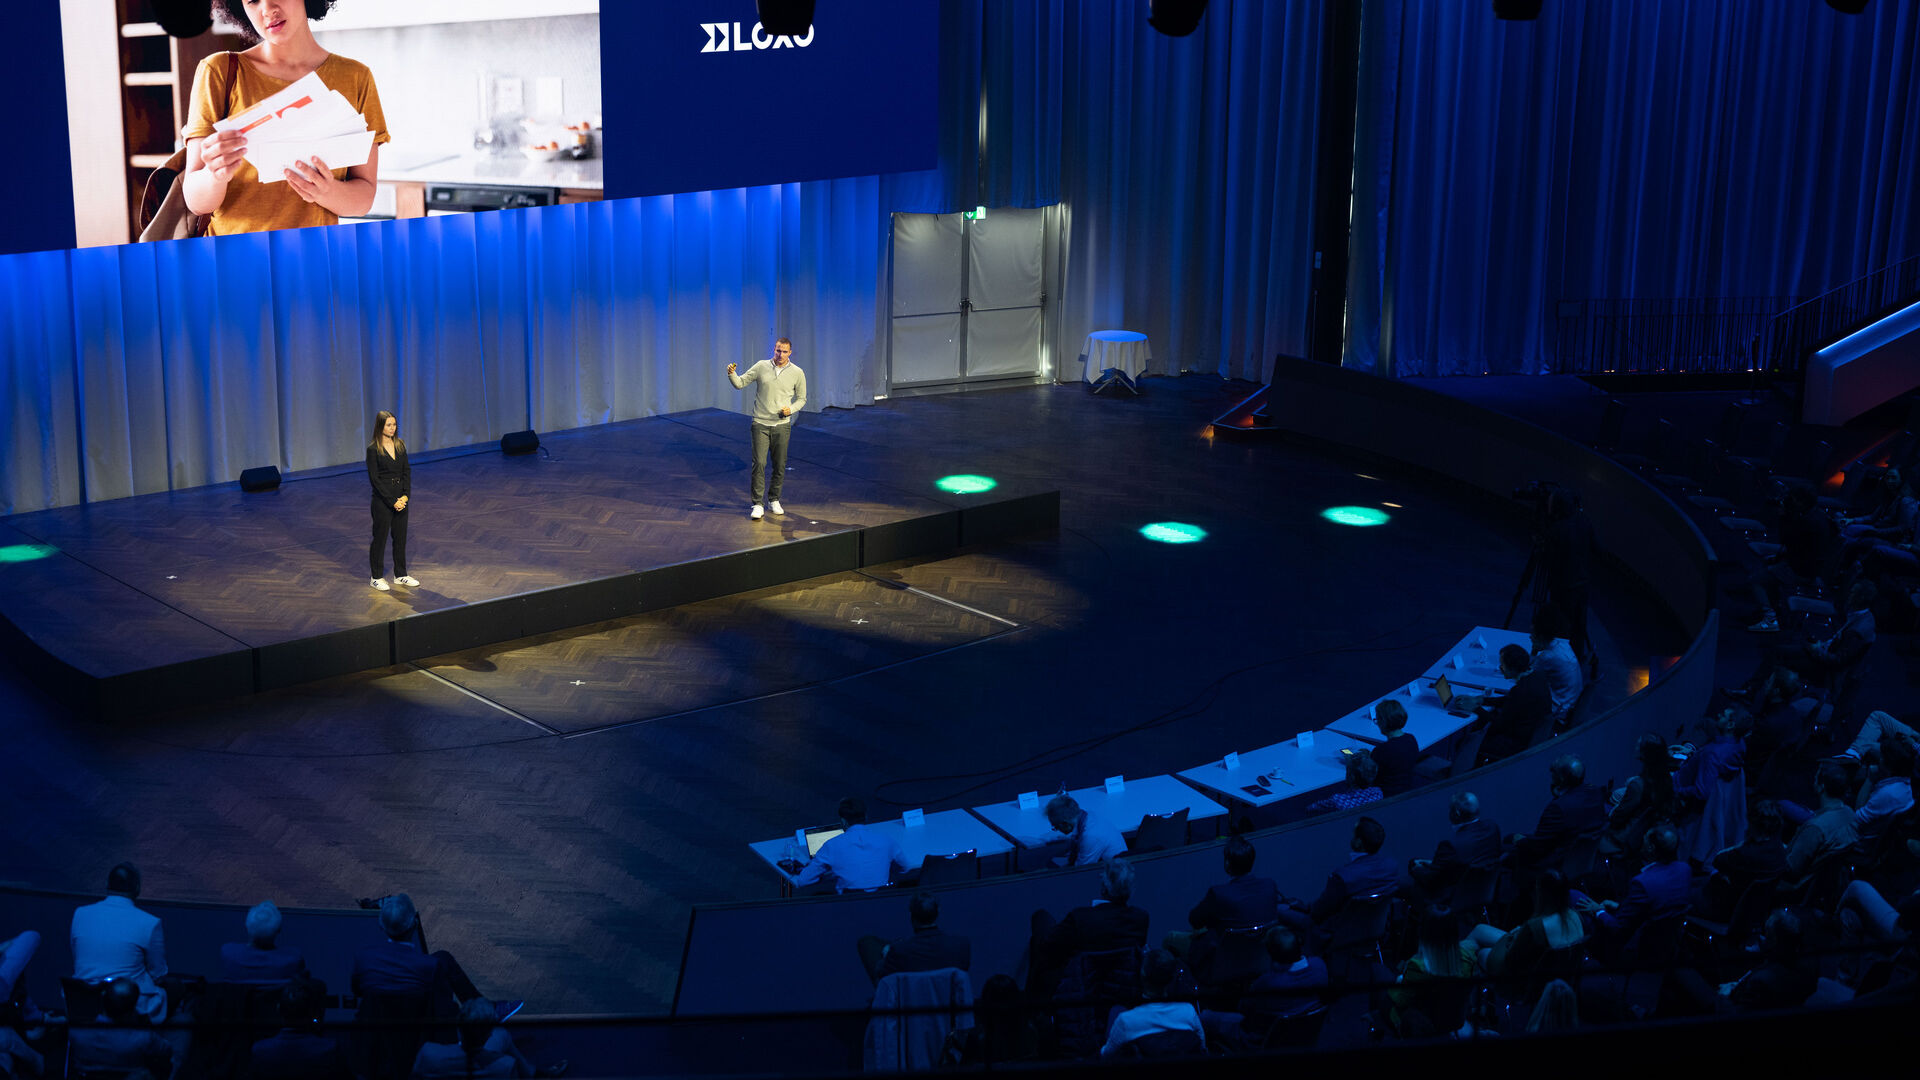 LOXO: Alpha je samovozeći kombi napravljen u cijelosti u Švicarskoj i predstavljen 6. decembra 2022. u Kursaal-u u Bernu na konferenciji za novinare start-up-a LOXO